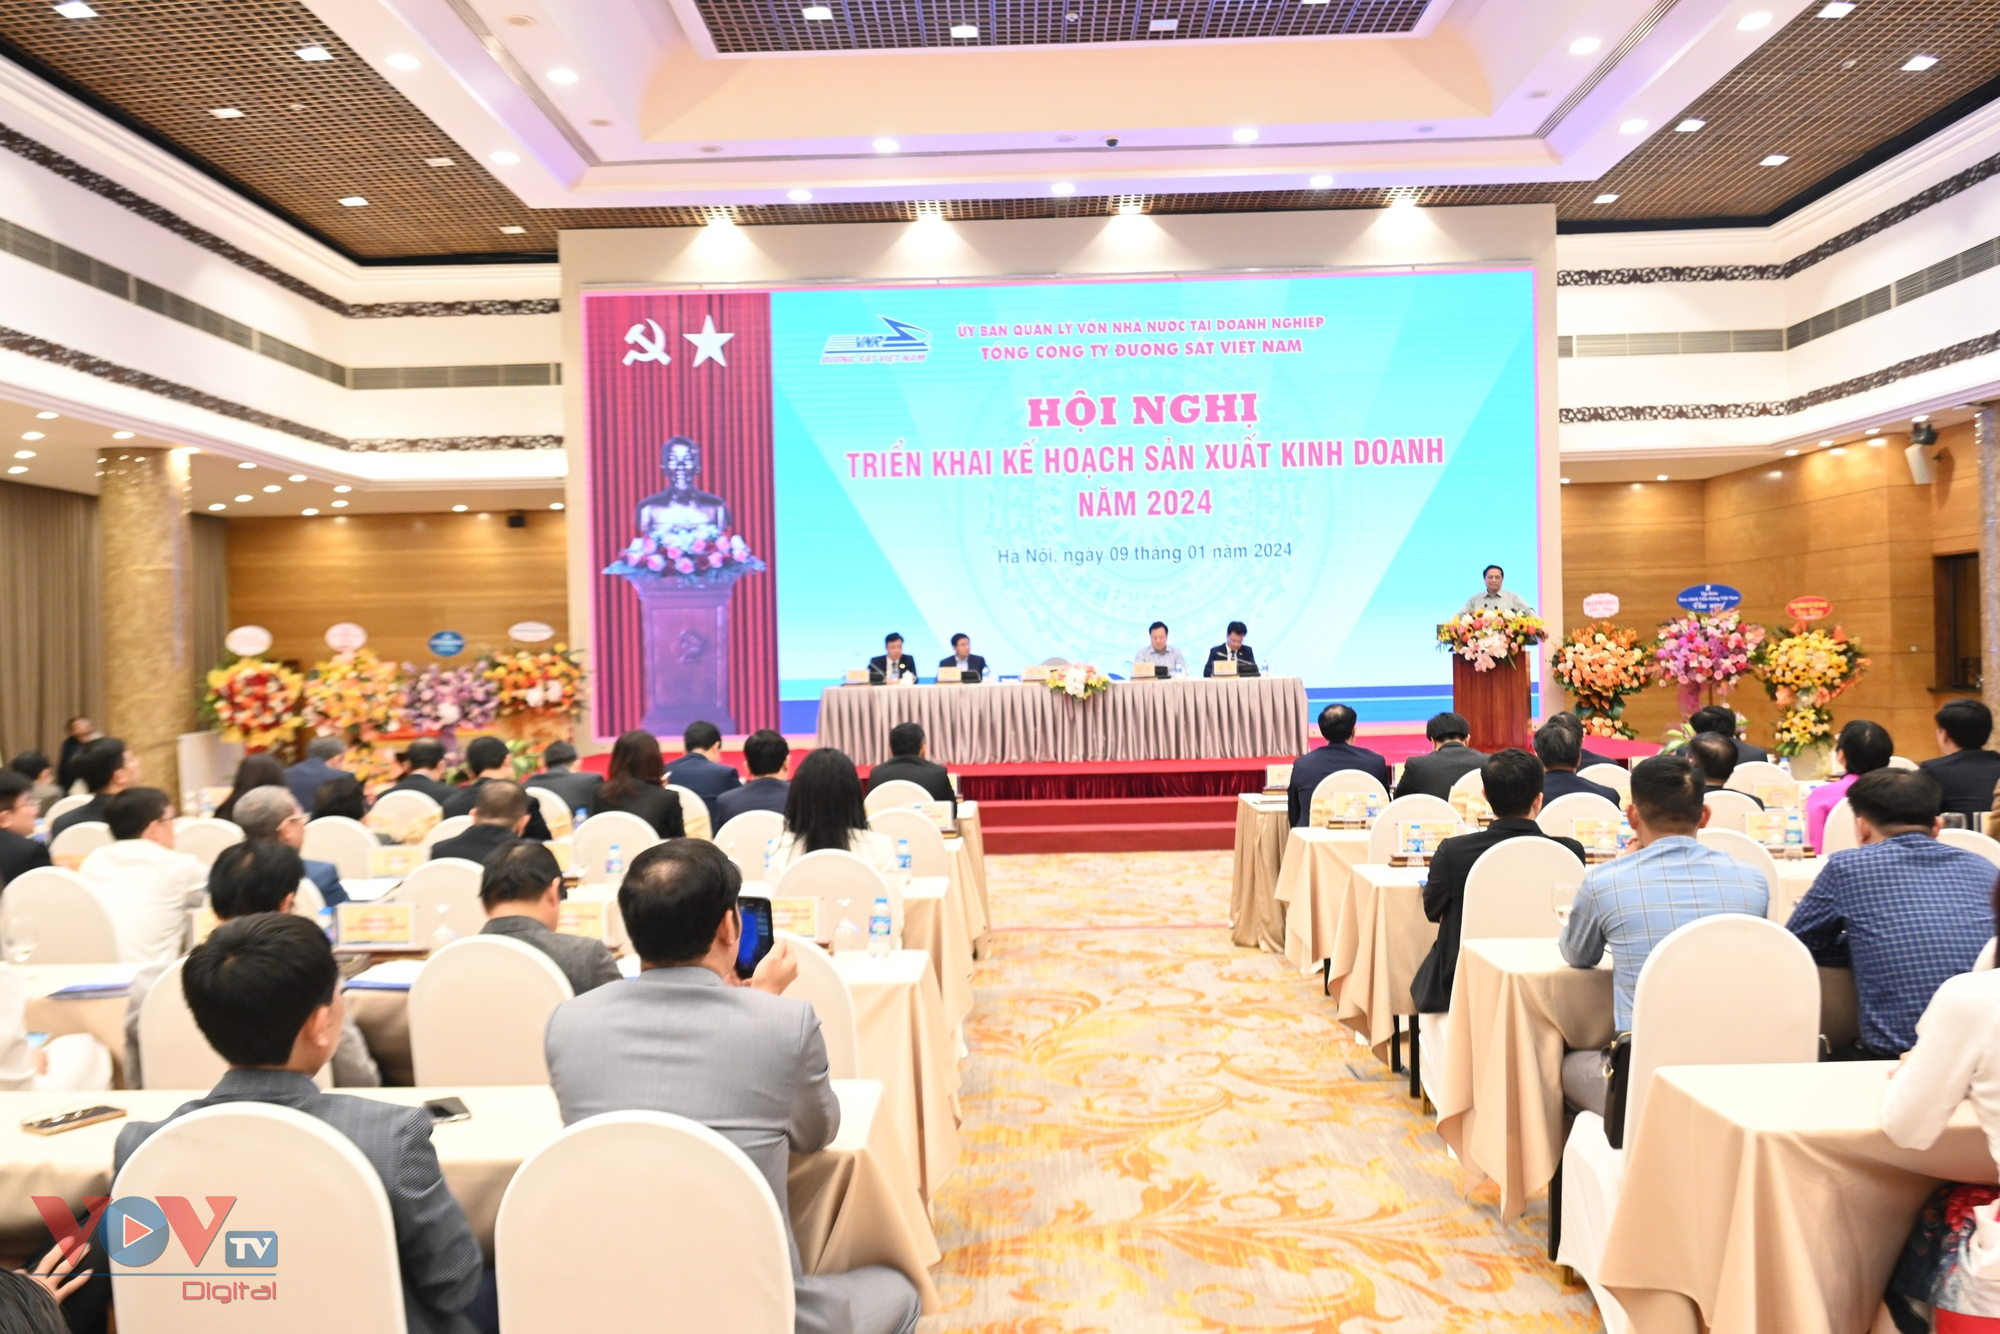 Thủ tướng dự Hội nghị Triển khai kế hoạch sản xuất, kinh doanh năm 2024 của Tổng công ty Đường sắt Việt Nam- Ảnh 9.